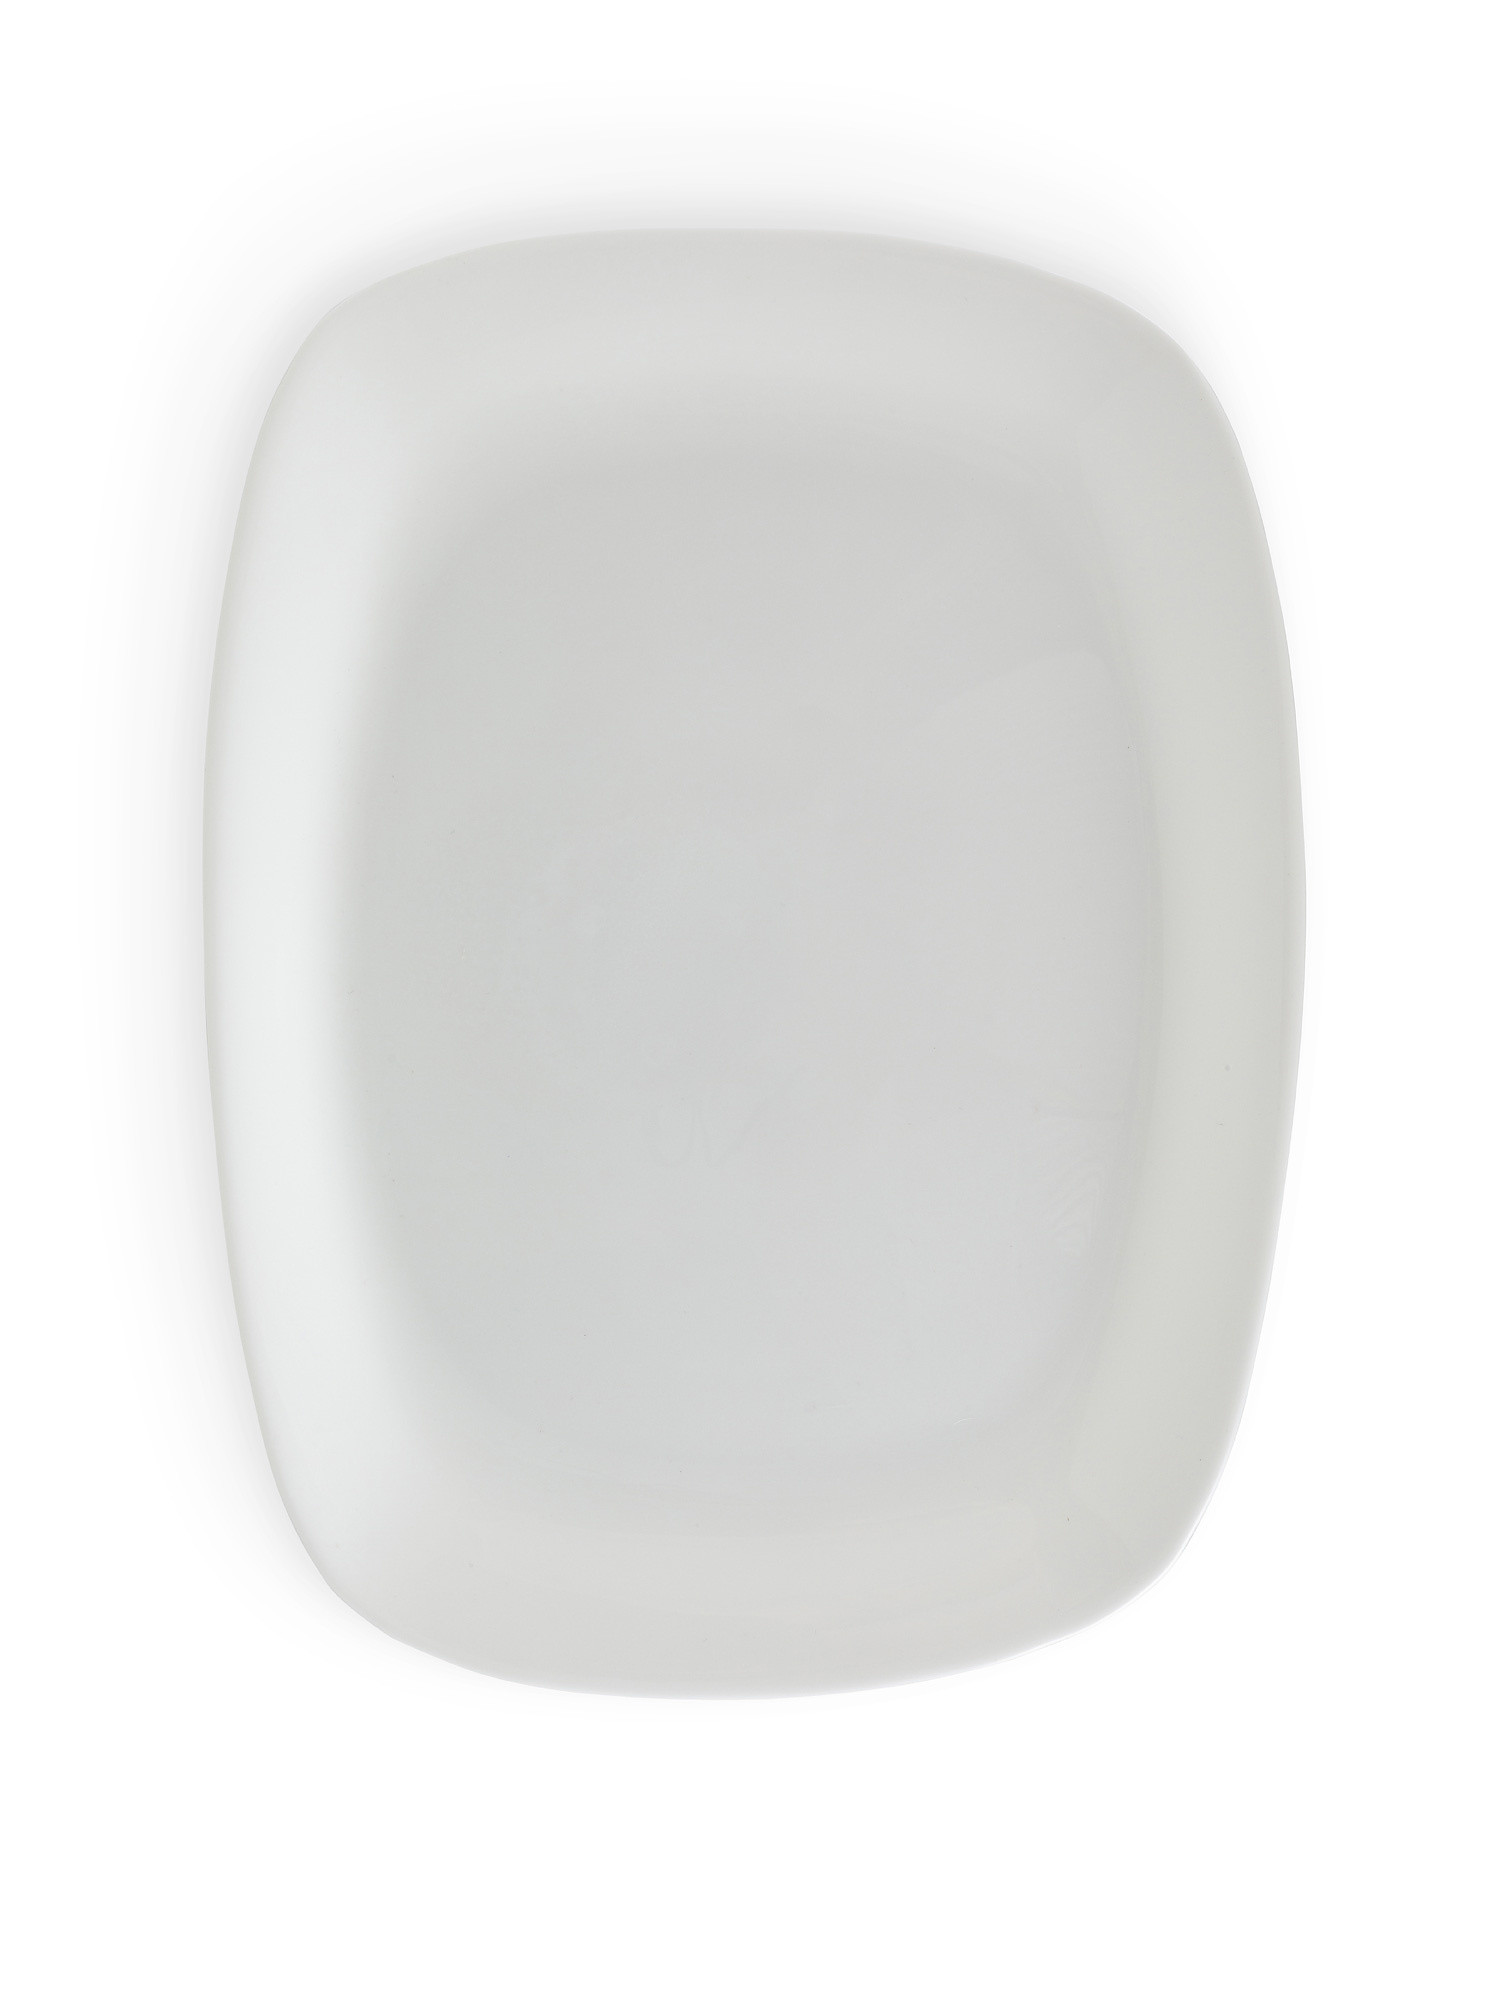 Piatto rettangolare vetro bianco, Bianco, large